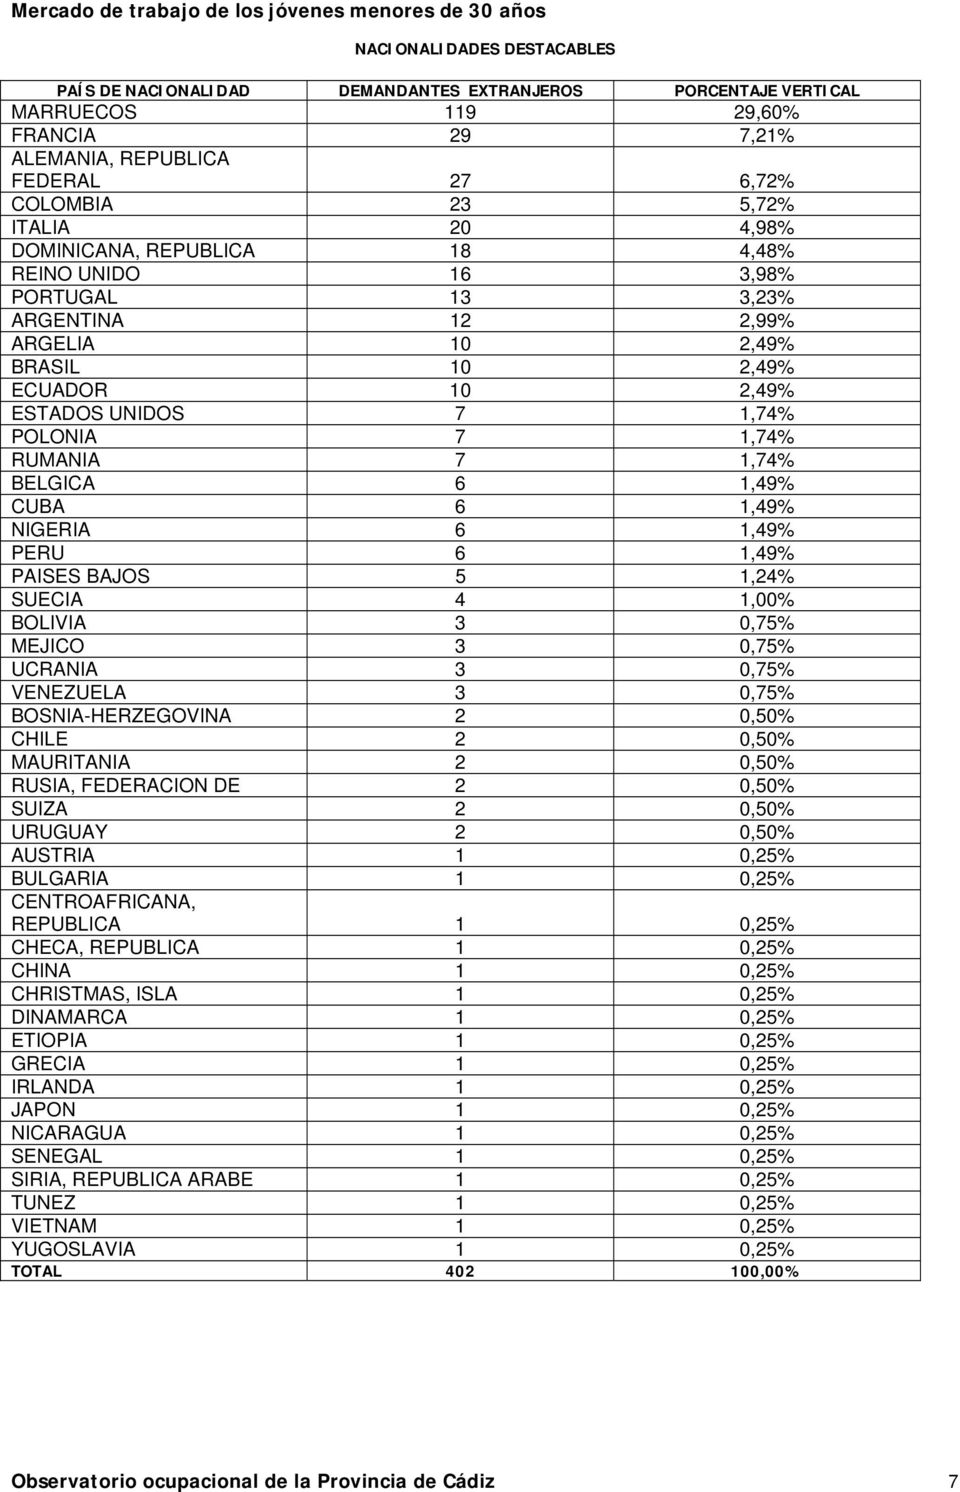 BELGICA 6 1,49% CUBA 6 1,49% NIGERIA 6 1,49% PERU 6 1,49% PAISES BAJOS 5 1,24% SUECIA 4 1,00% BOLIVIA 3 0,75% MEJICO 3 0,75% UCRANIA 3 0,75% VENEZUELA 3 0,75% BOSNIA-HERZEGOVINA 2 0,50% CHILE 2 0,50%